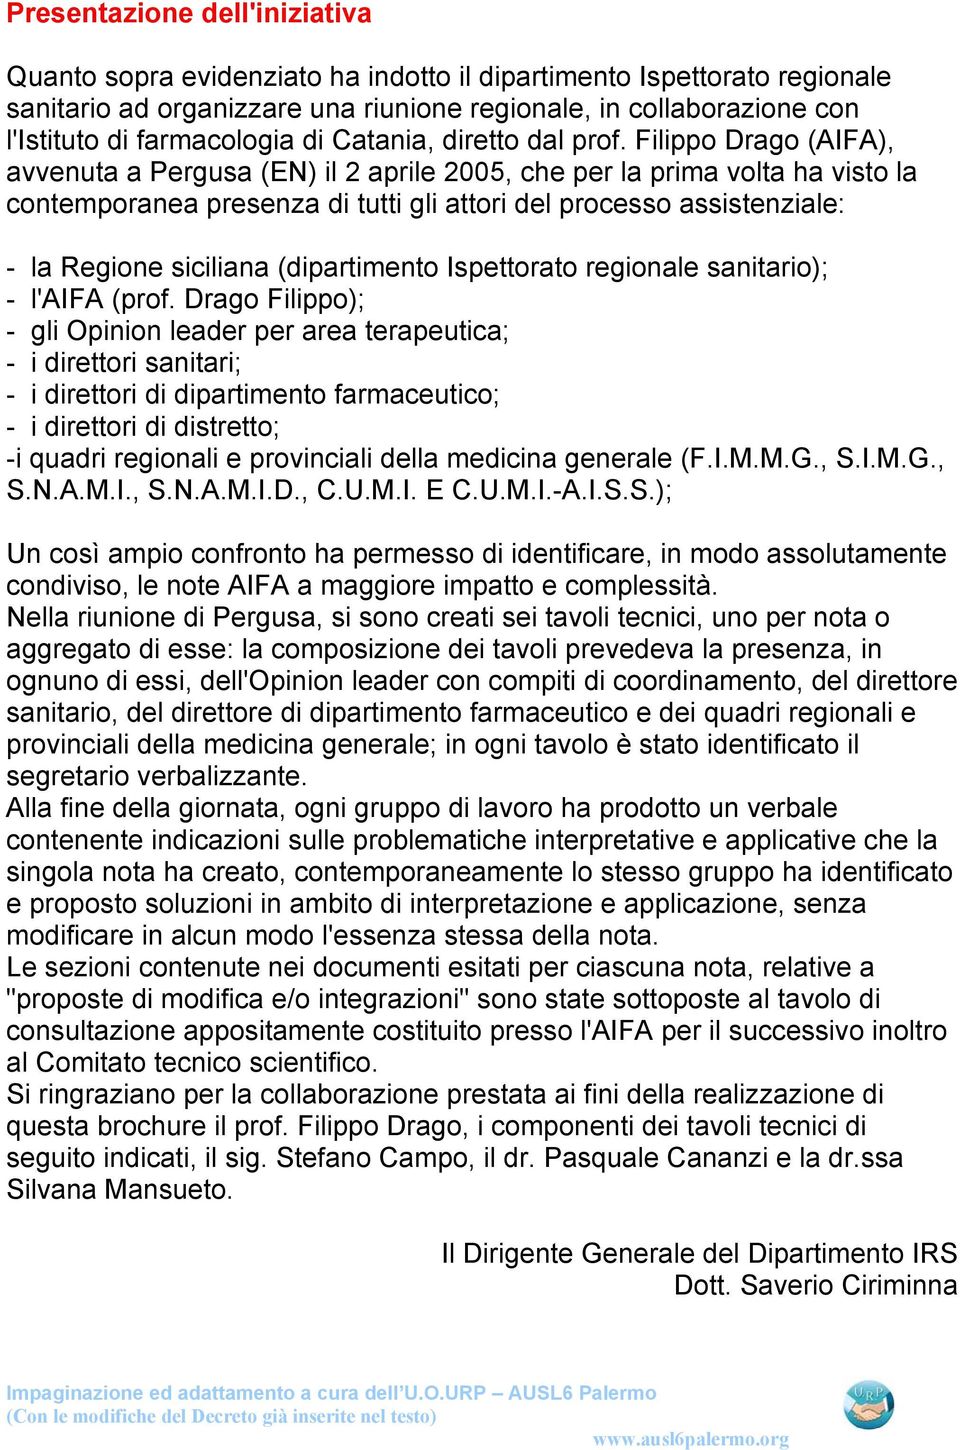 Filippo Drago (AIFA), avvenuta a Pergusa (EN) il 2 aprile 2005, che per la prima volta ha visto la contemporanea presenza di tutti gli attori del processo assistenziale: - la Regione siciliana